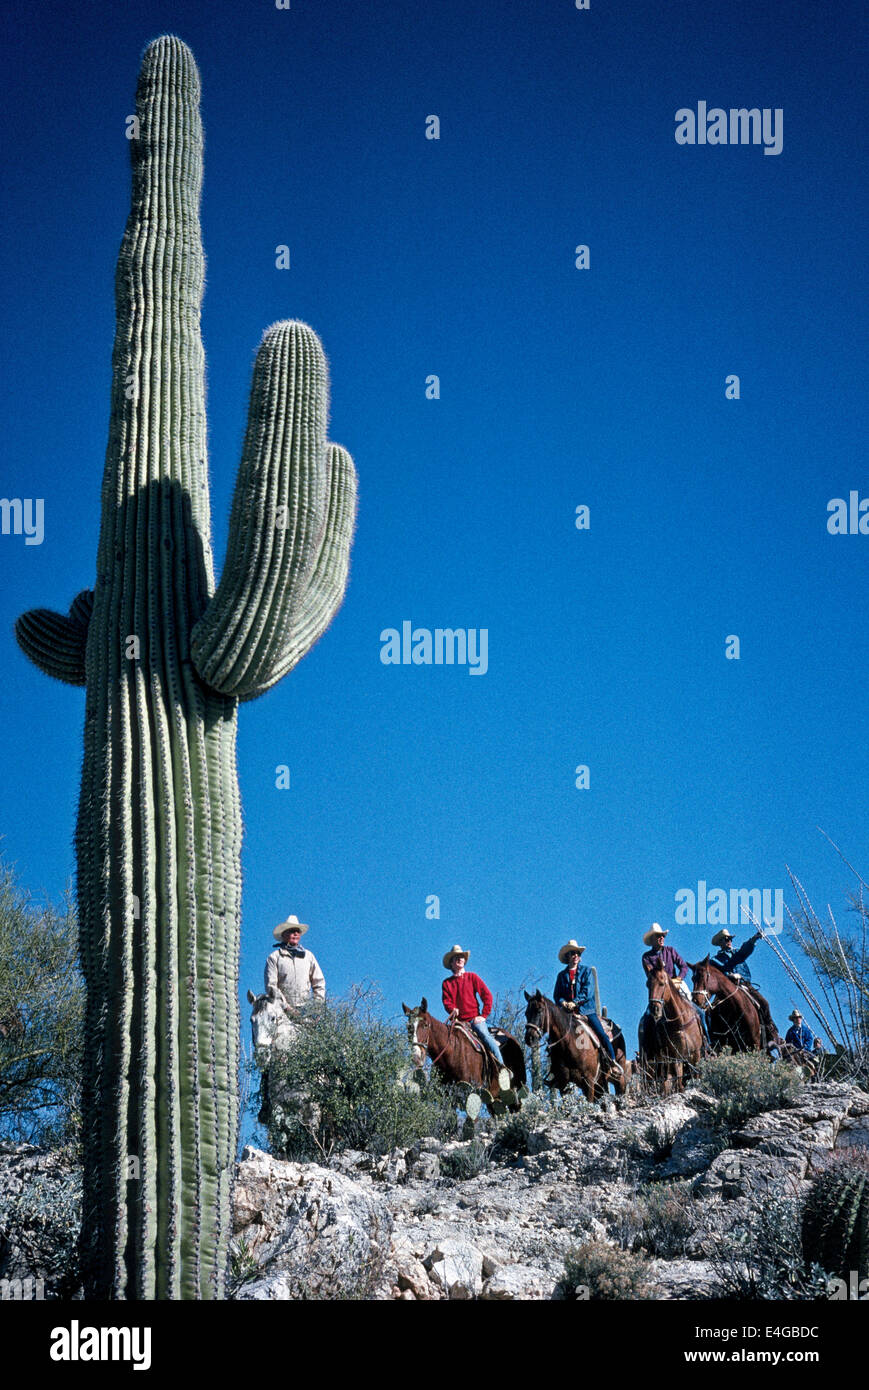 Ein hoch aufragenden Saguaro-Kaktus Rahmen für eine Gruppe von Guest Ranch Reiter, die pause während ihrer Wanderritt an der Sonora-Wüste in Arizona, USA. Stockfoto